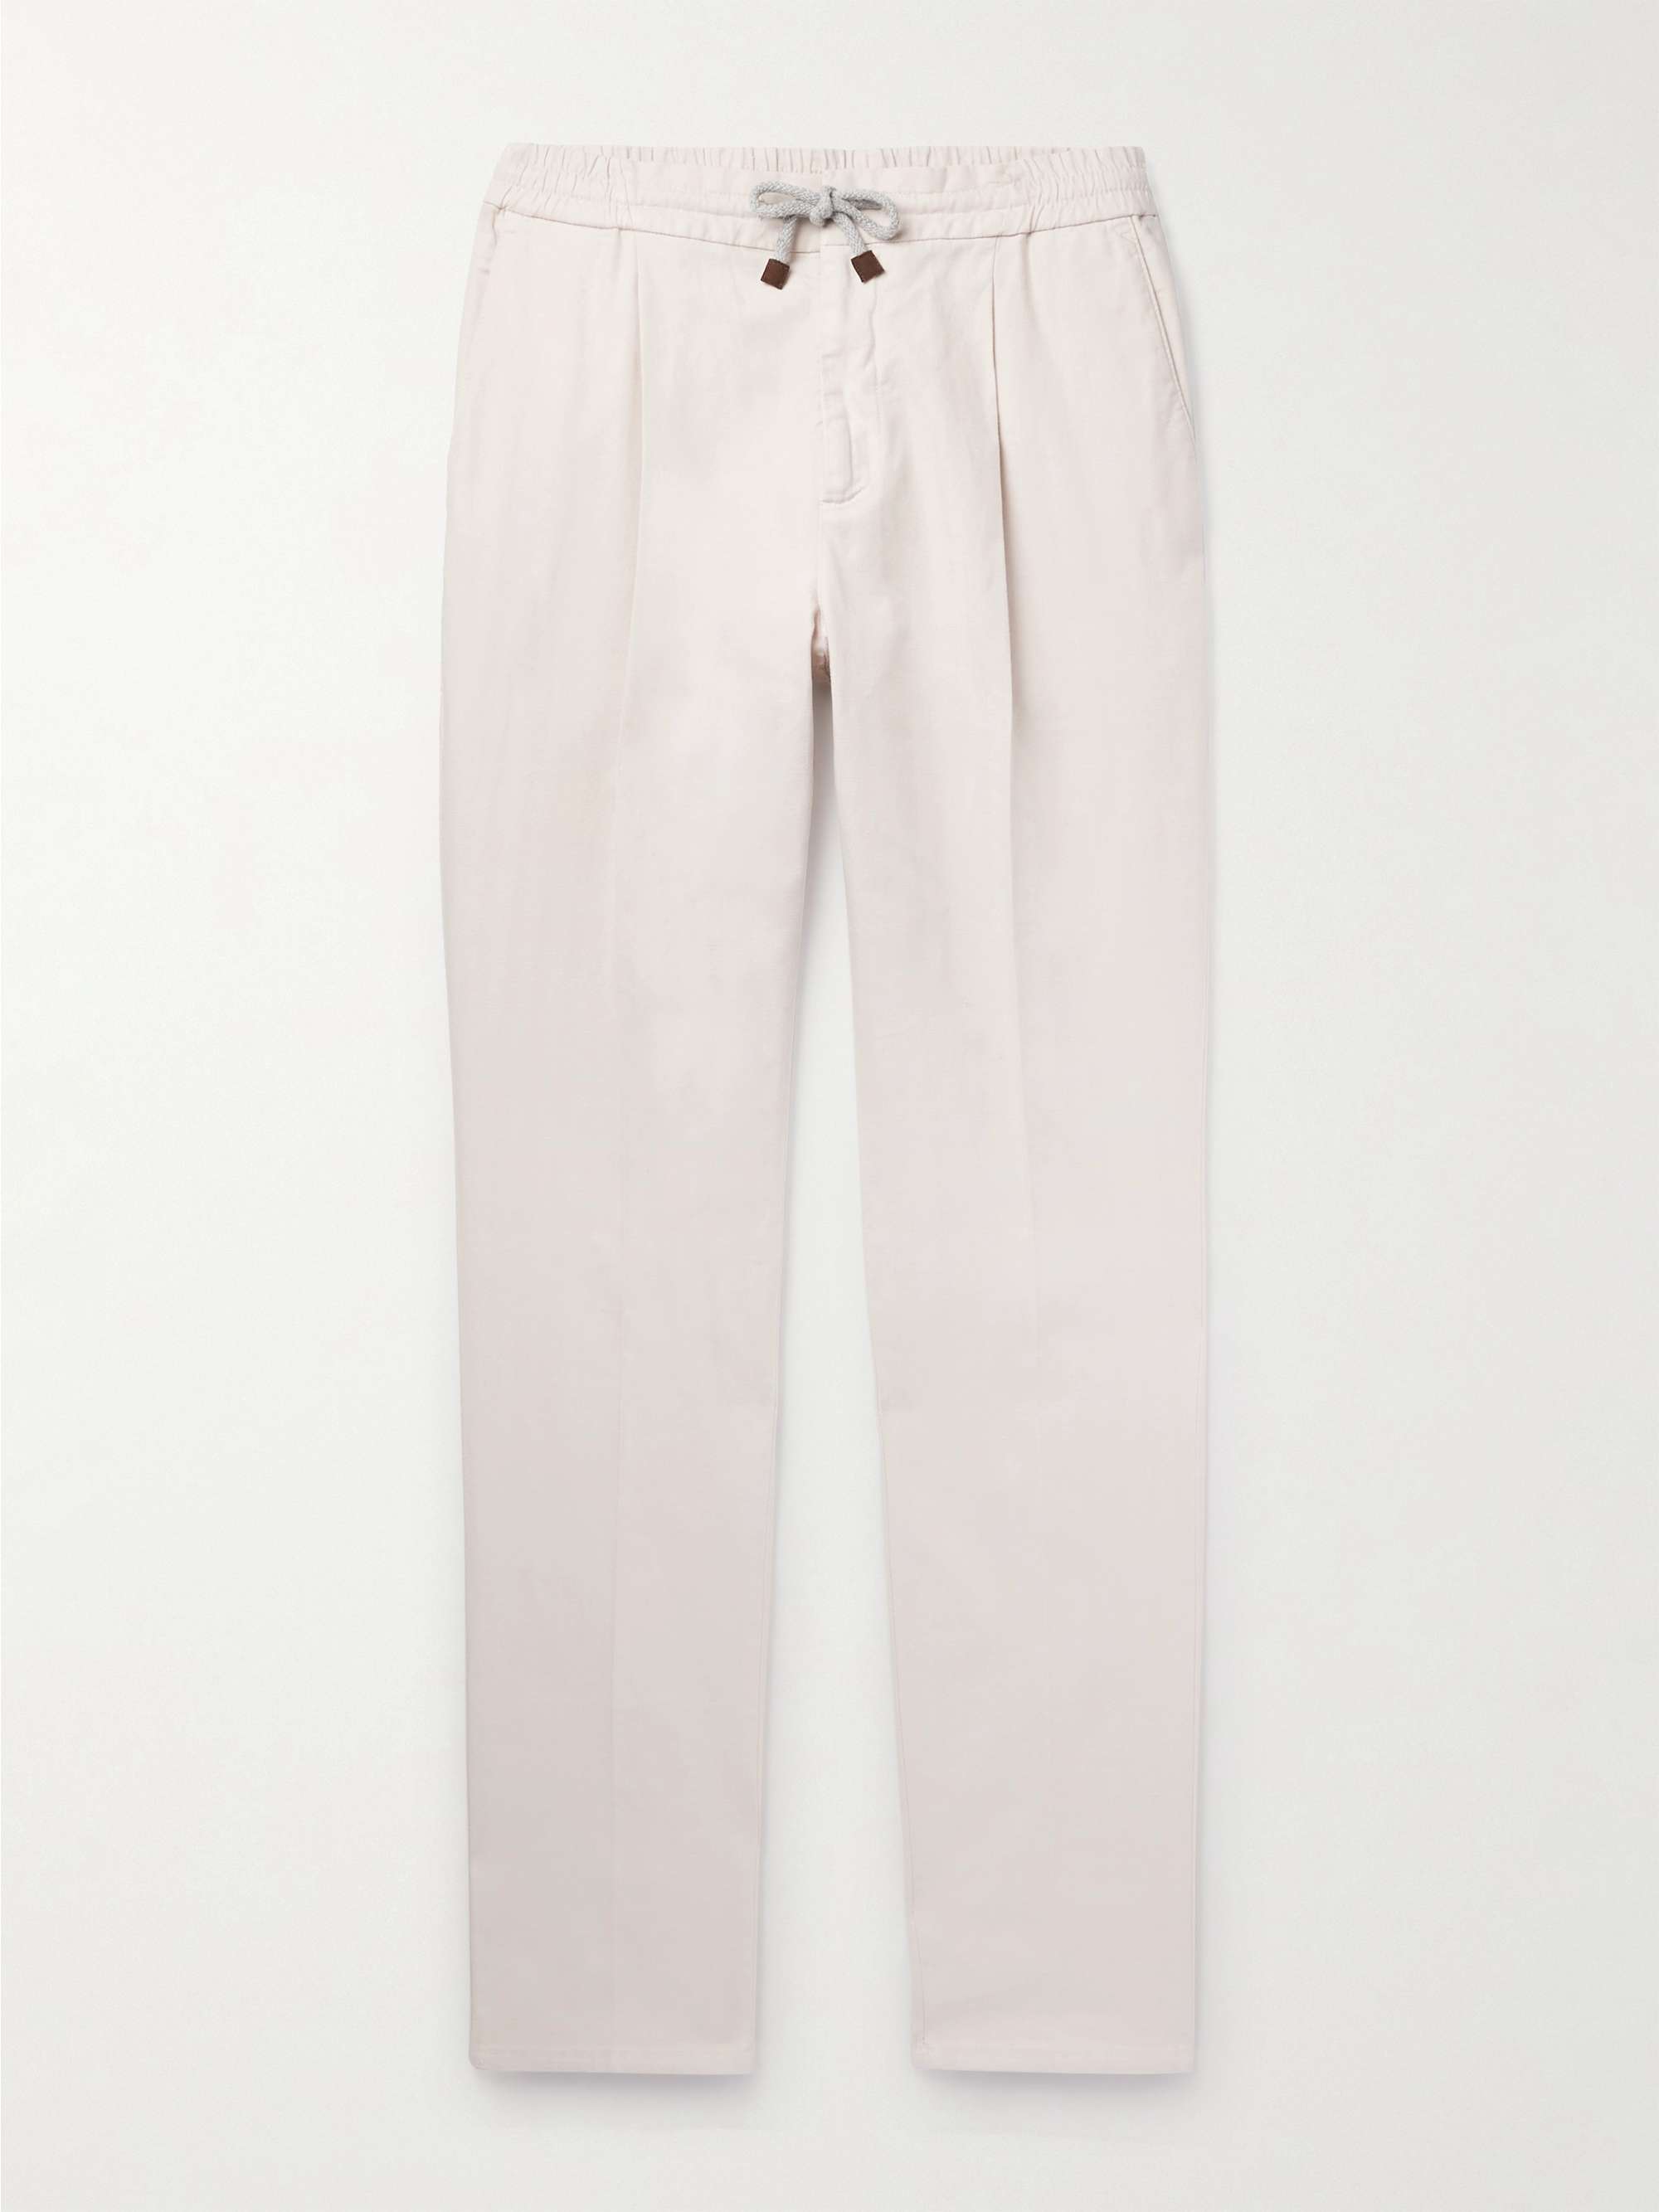 BRUNELLO CUCINELLI, Pleated Cotton Gabardine Pants, Men